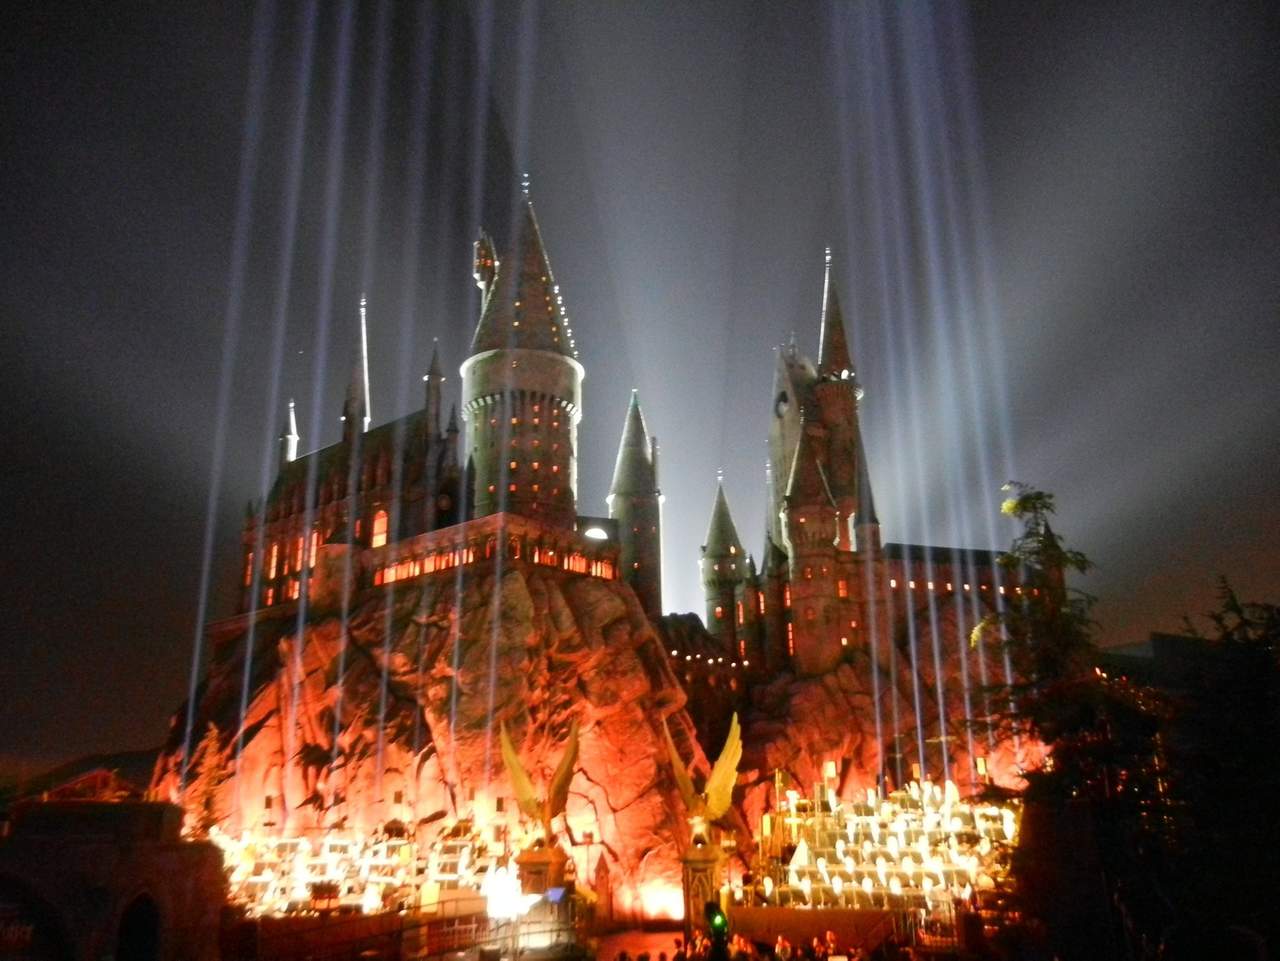 Toda la atracción de Harry Potter tuvo un costo de 500 millones de dólares y ocupa el mismo sitio en donde años atrás existió el anfiteatro de los Estudios Universal.